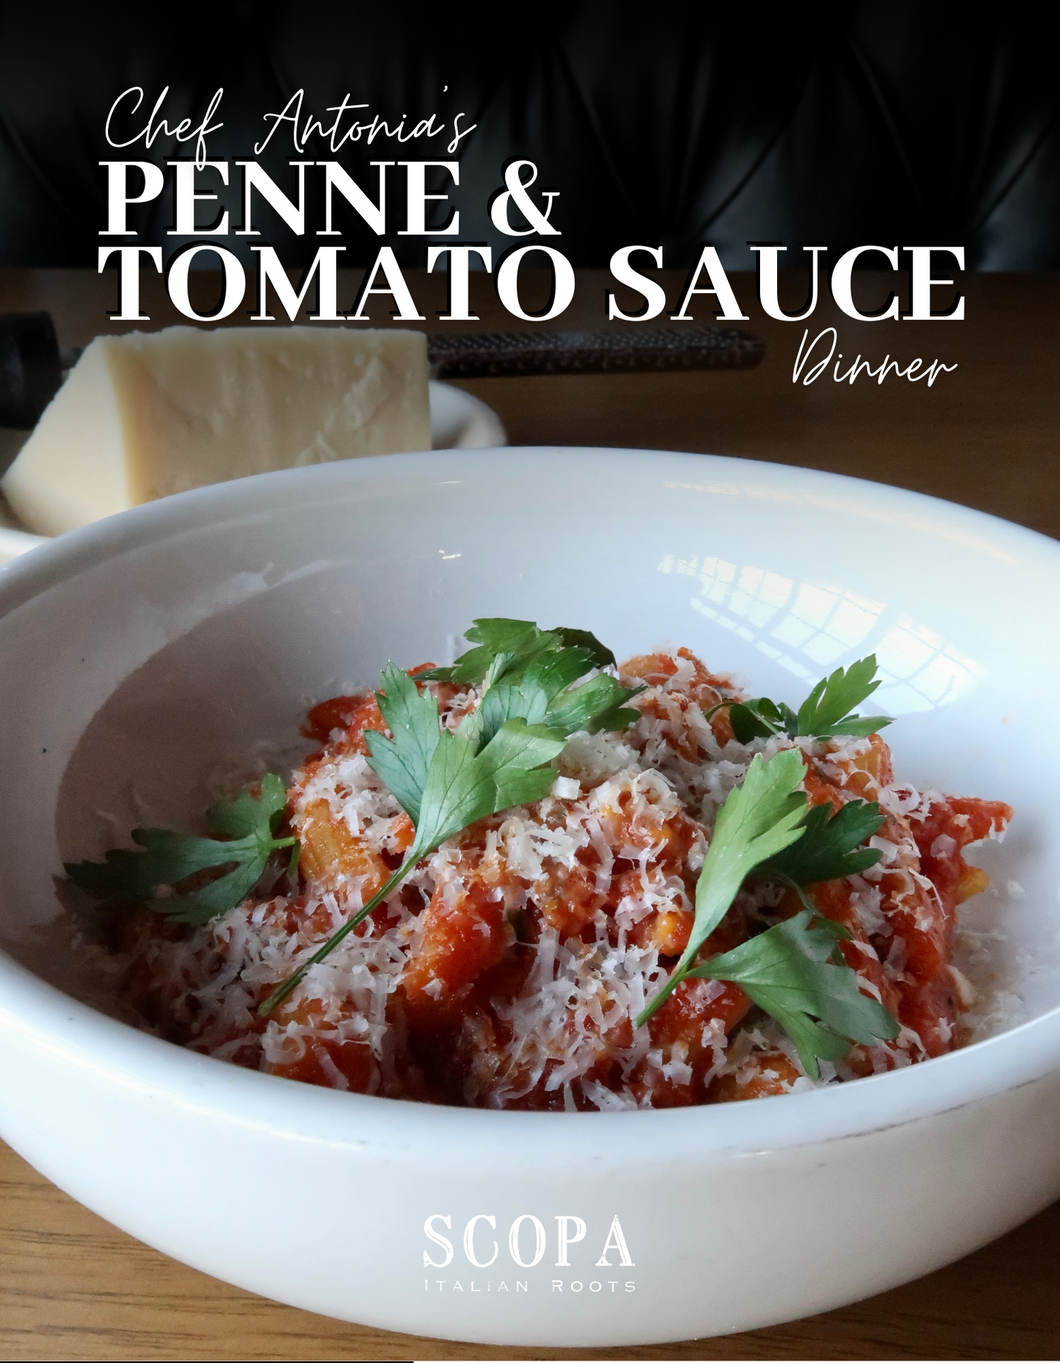 Penne & Tomato Sauce Family Pasta Dinner